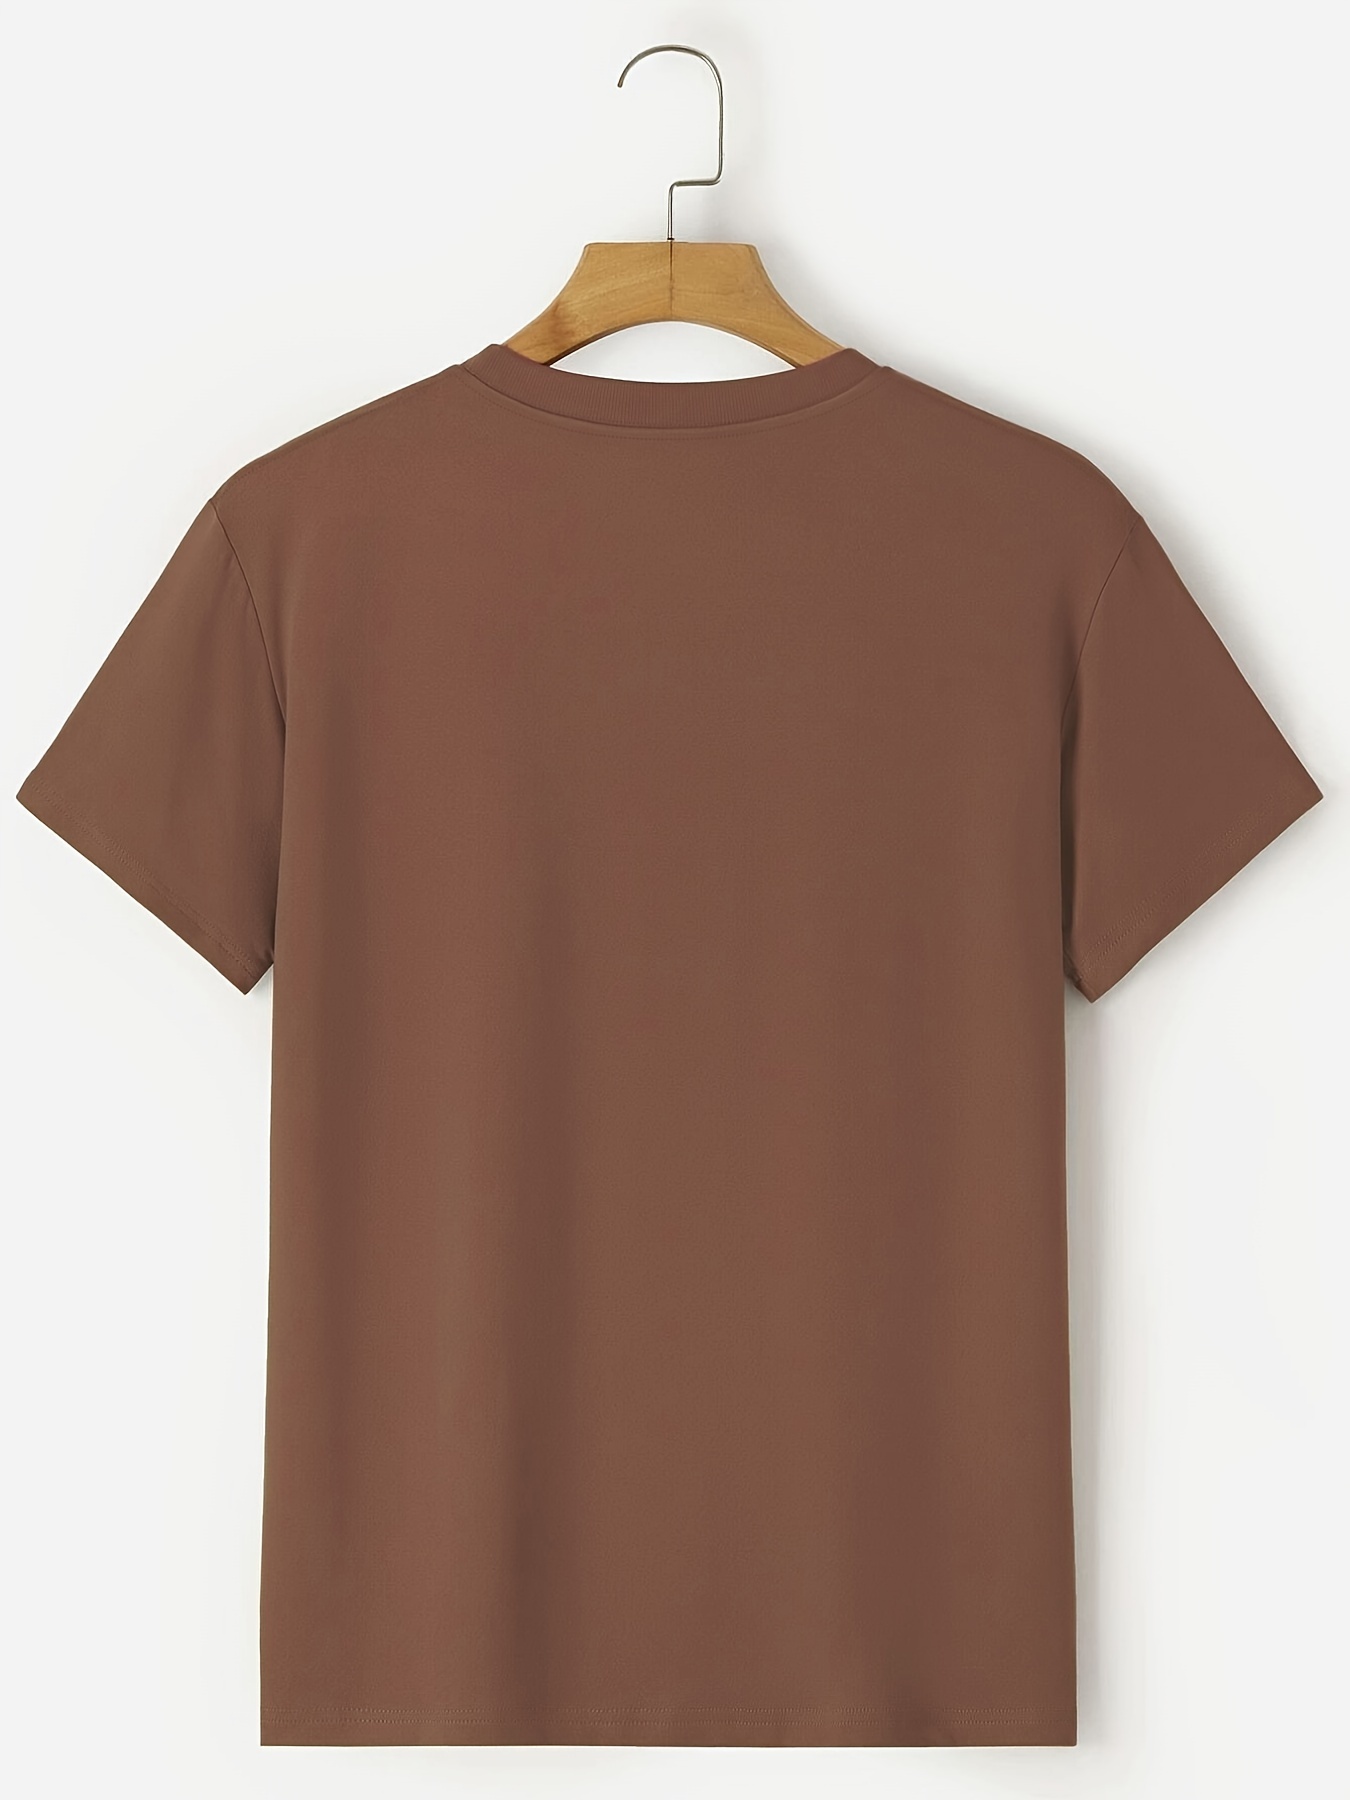 Camiseta Basica Hombre Plus - Manpotsherd Urban